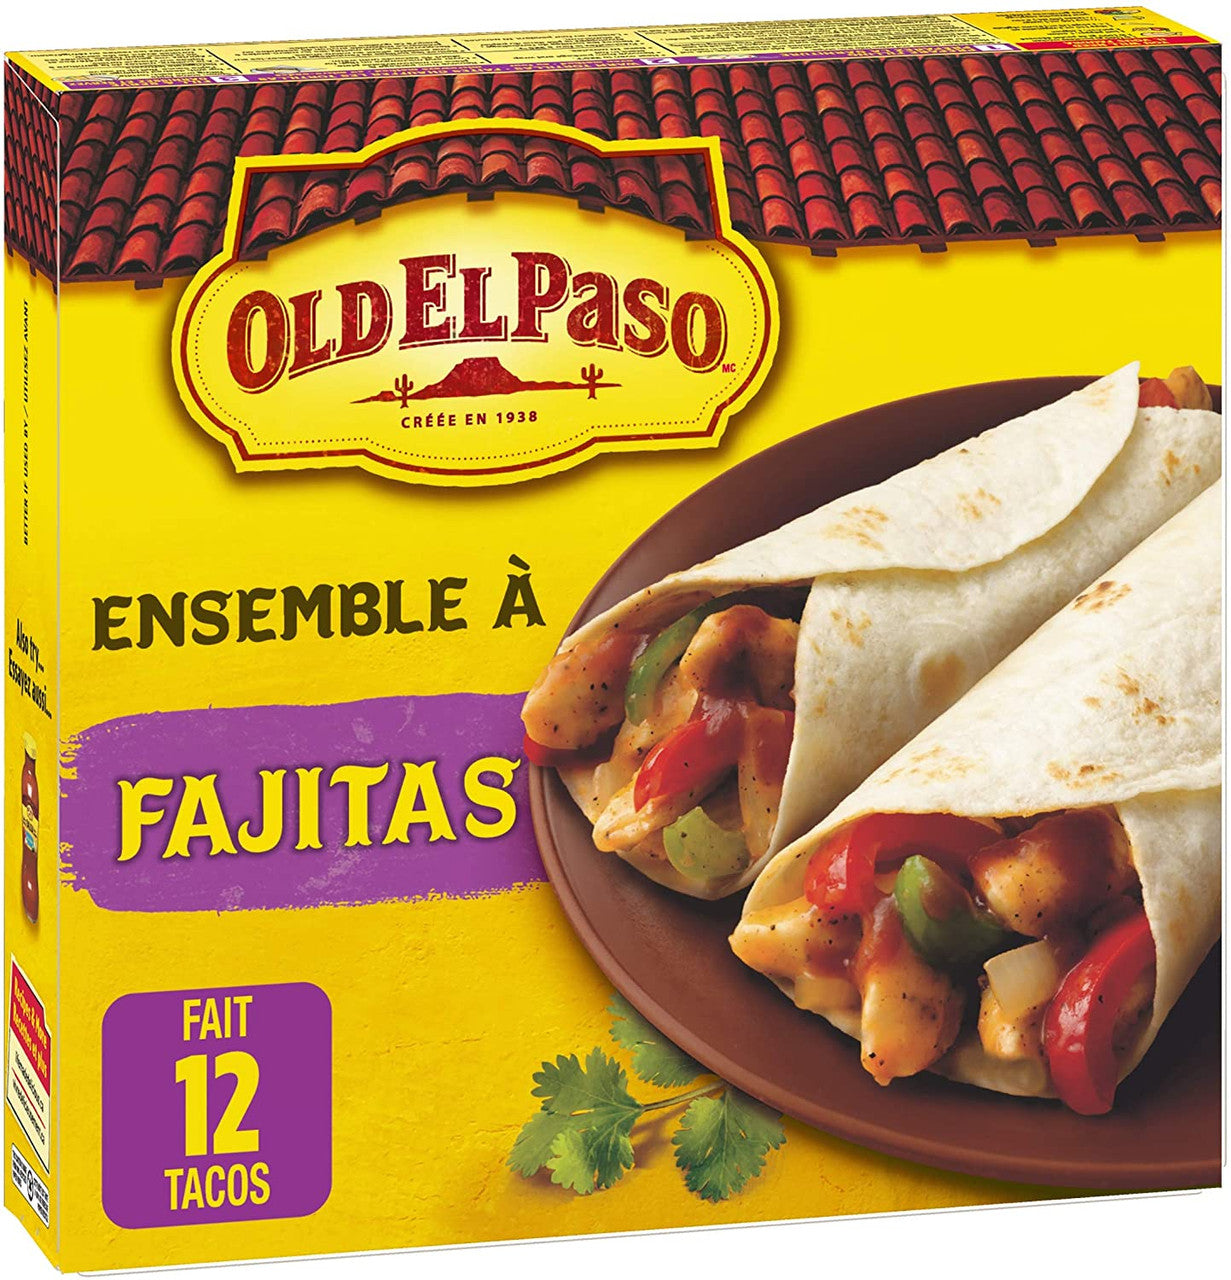 Old El Paso Dinner Kit, Soft Taco 12.5 Oz, Hispanic